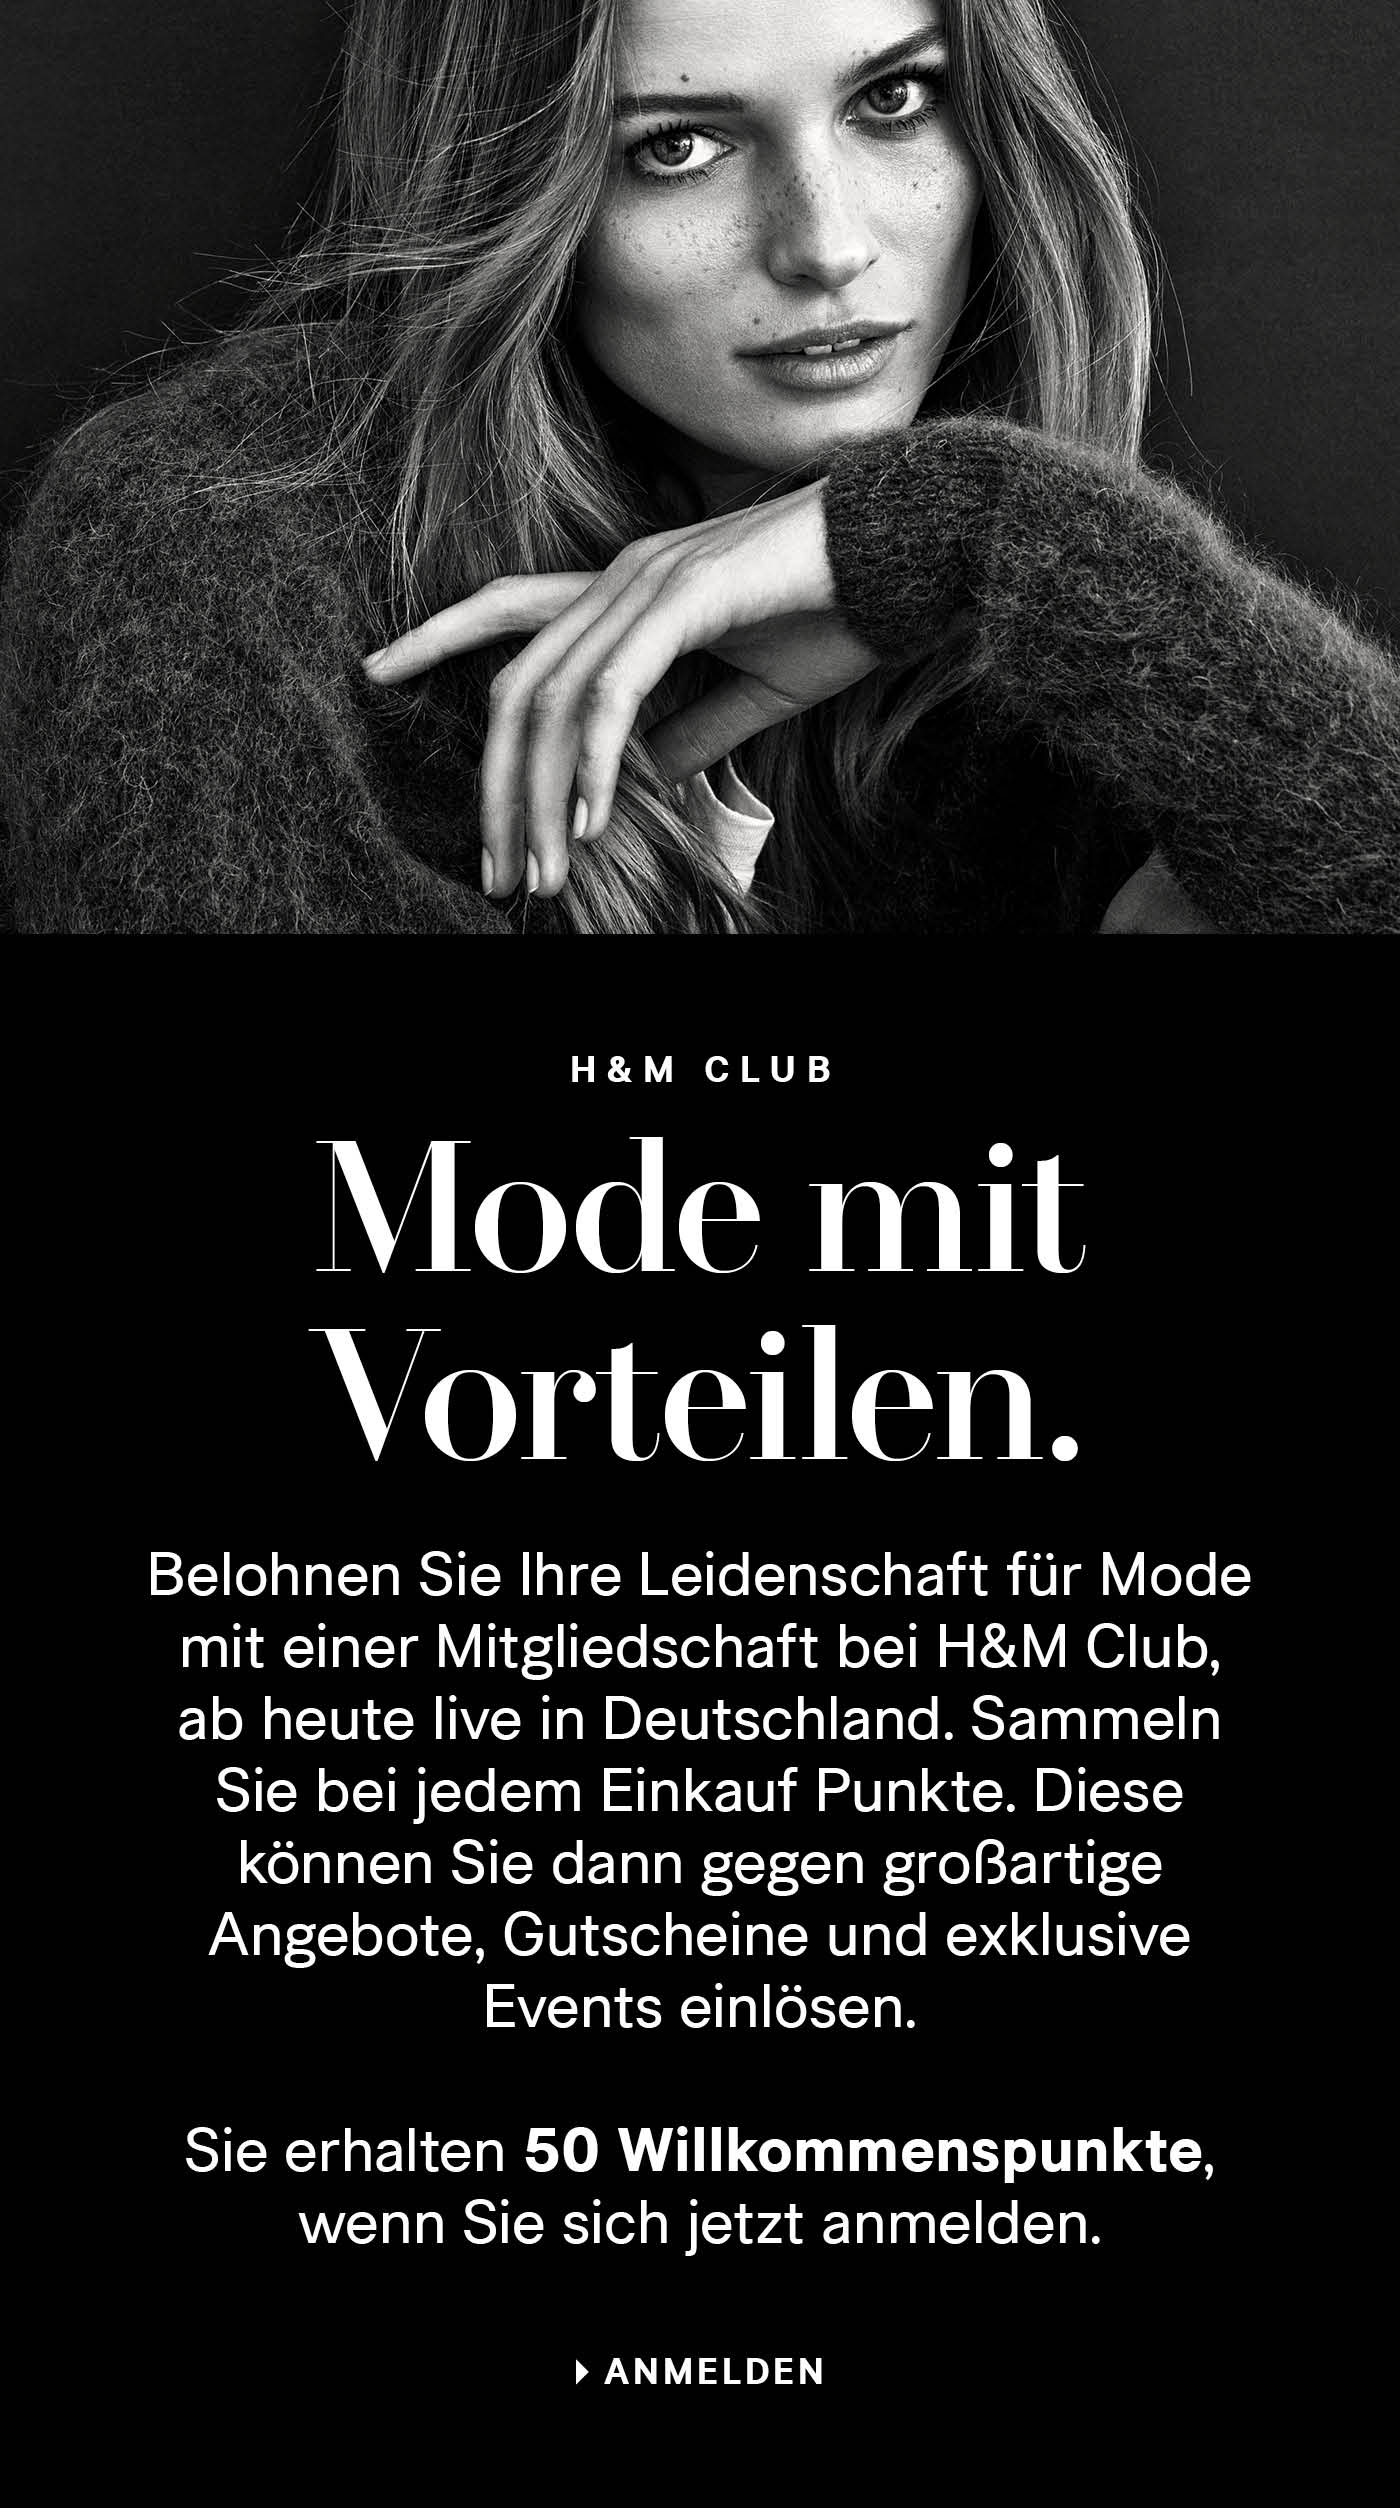 für alle H&M-Shopaholics: der neue Club